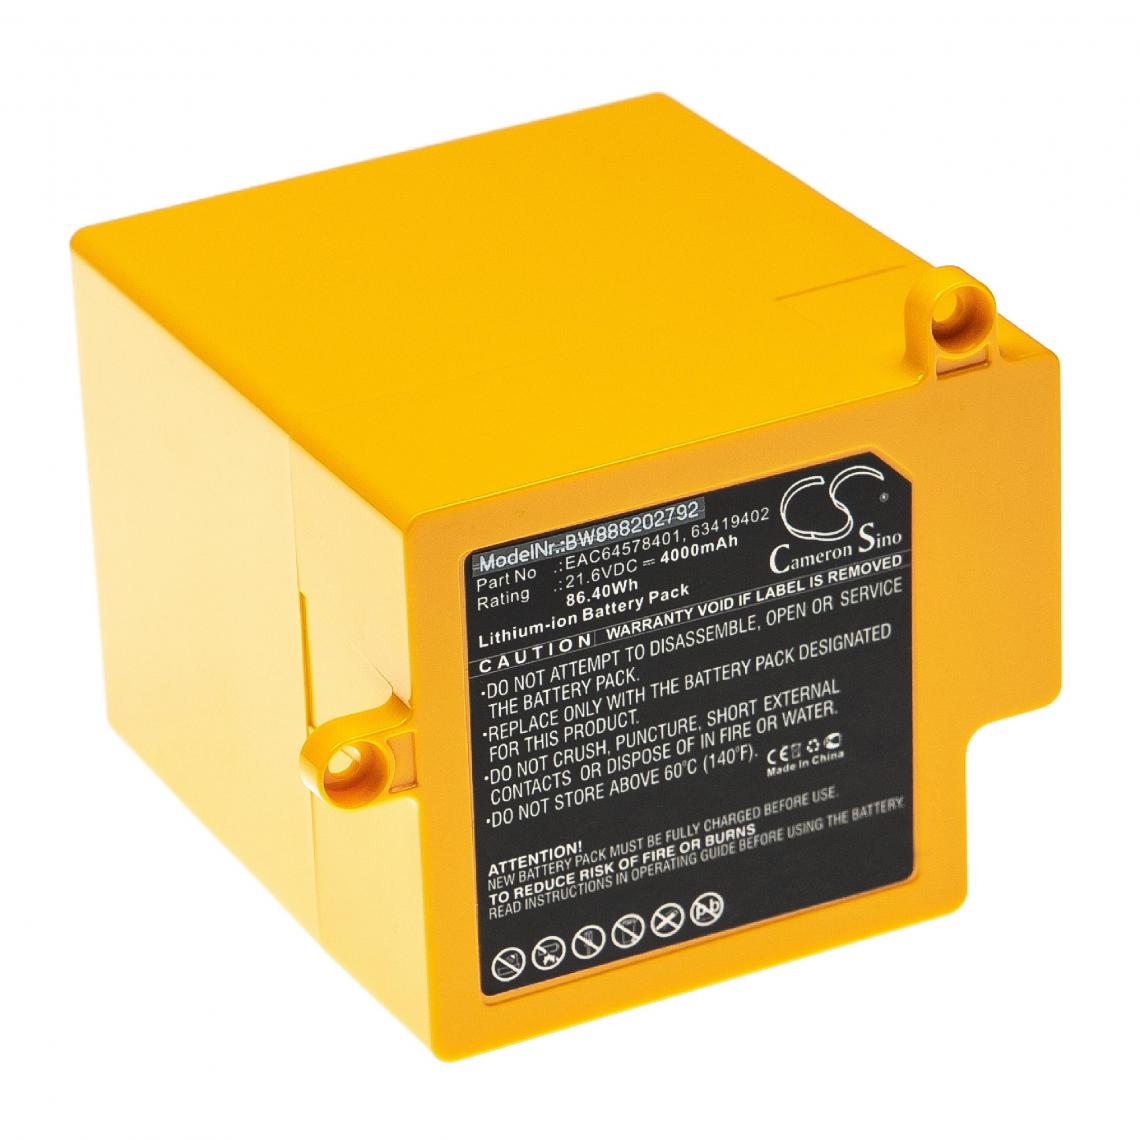 Vhbw - vhbw Batterie remplacement pour LG 63419402, EAC64578401, EAC64578402 pour aspirateur, robot électroménager (4000mAh, 21,6V, Li-ion) - Accessoire entretien des sols